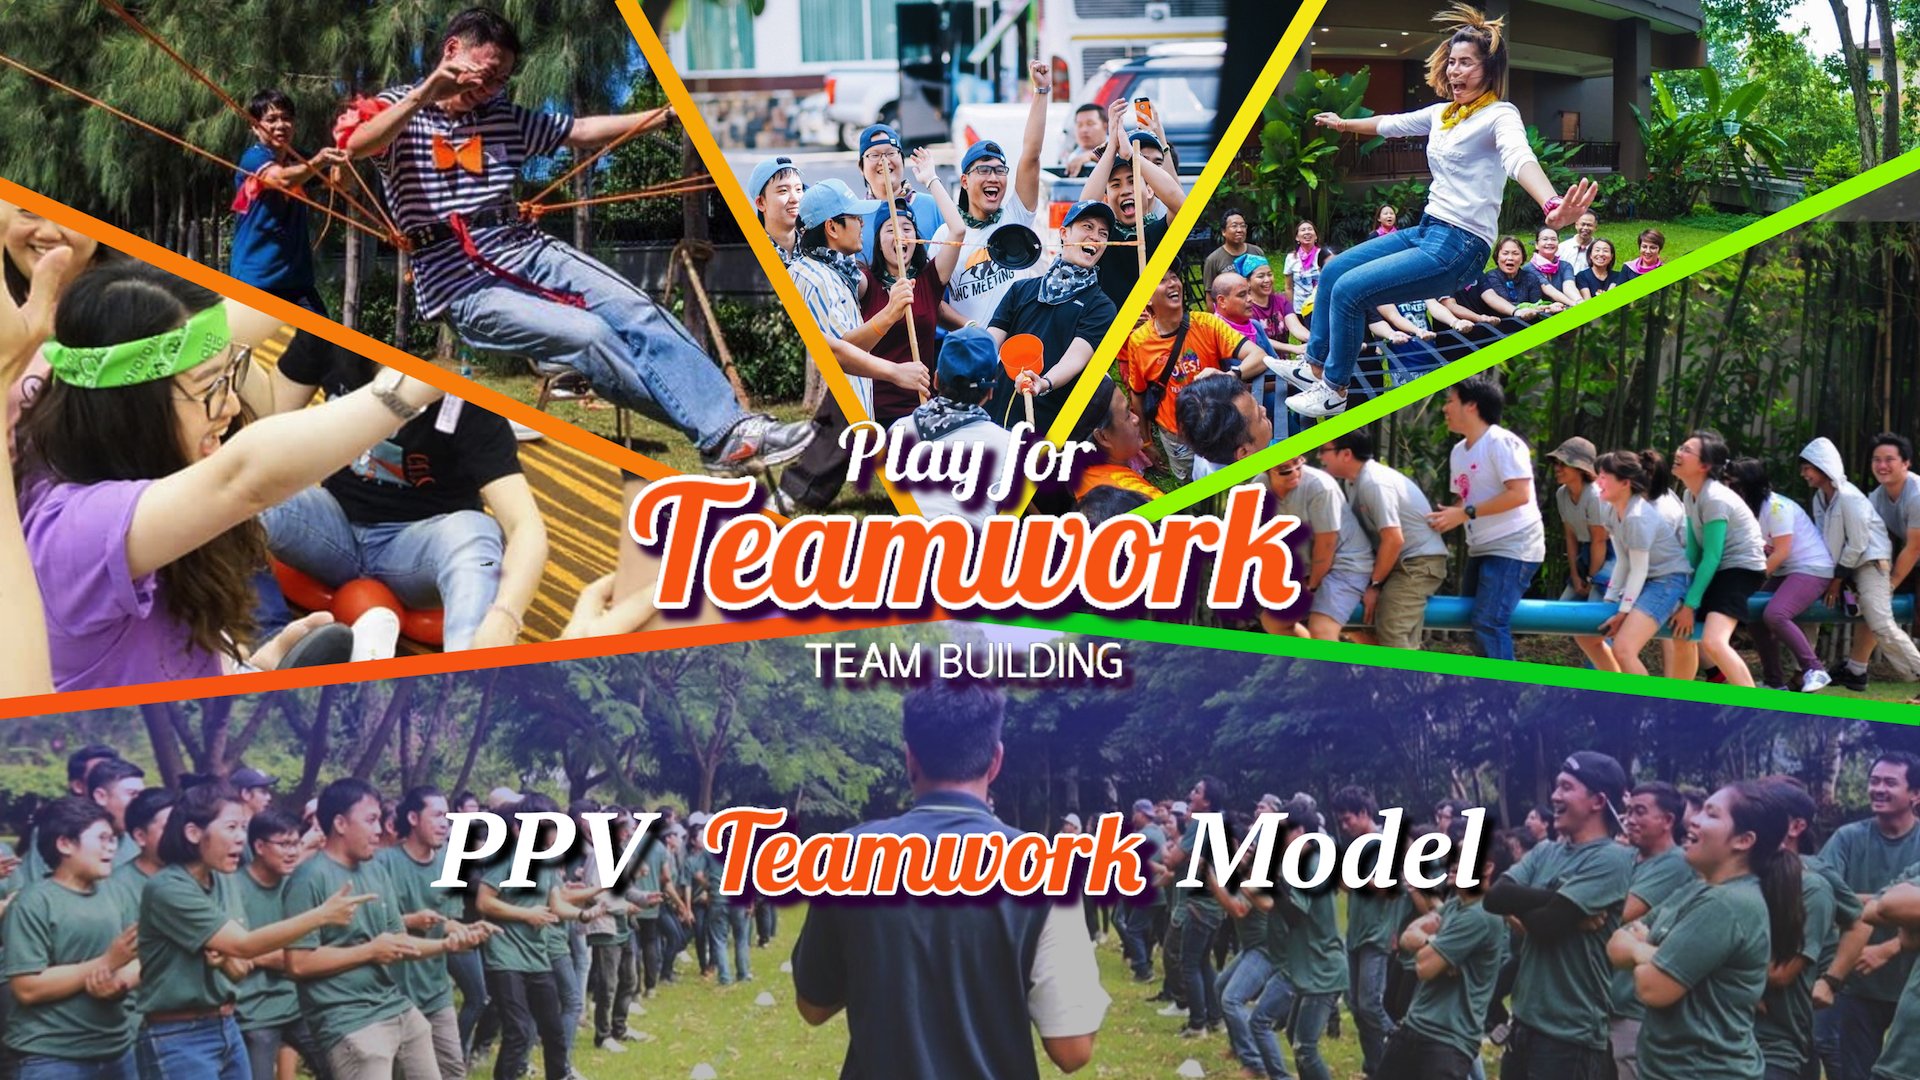 PPV Teamwork Model